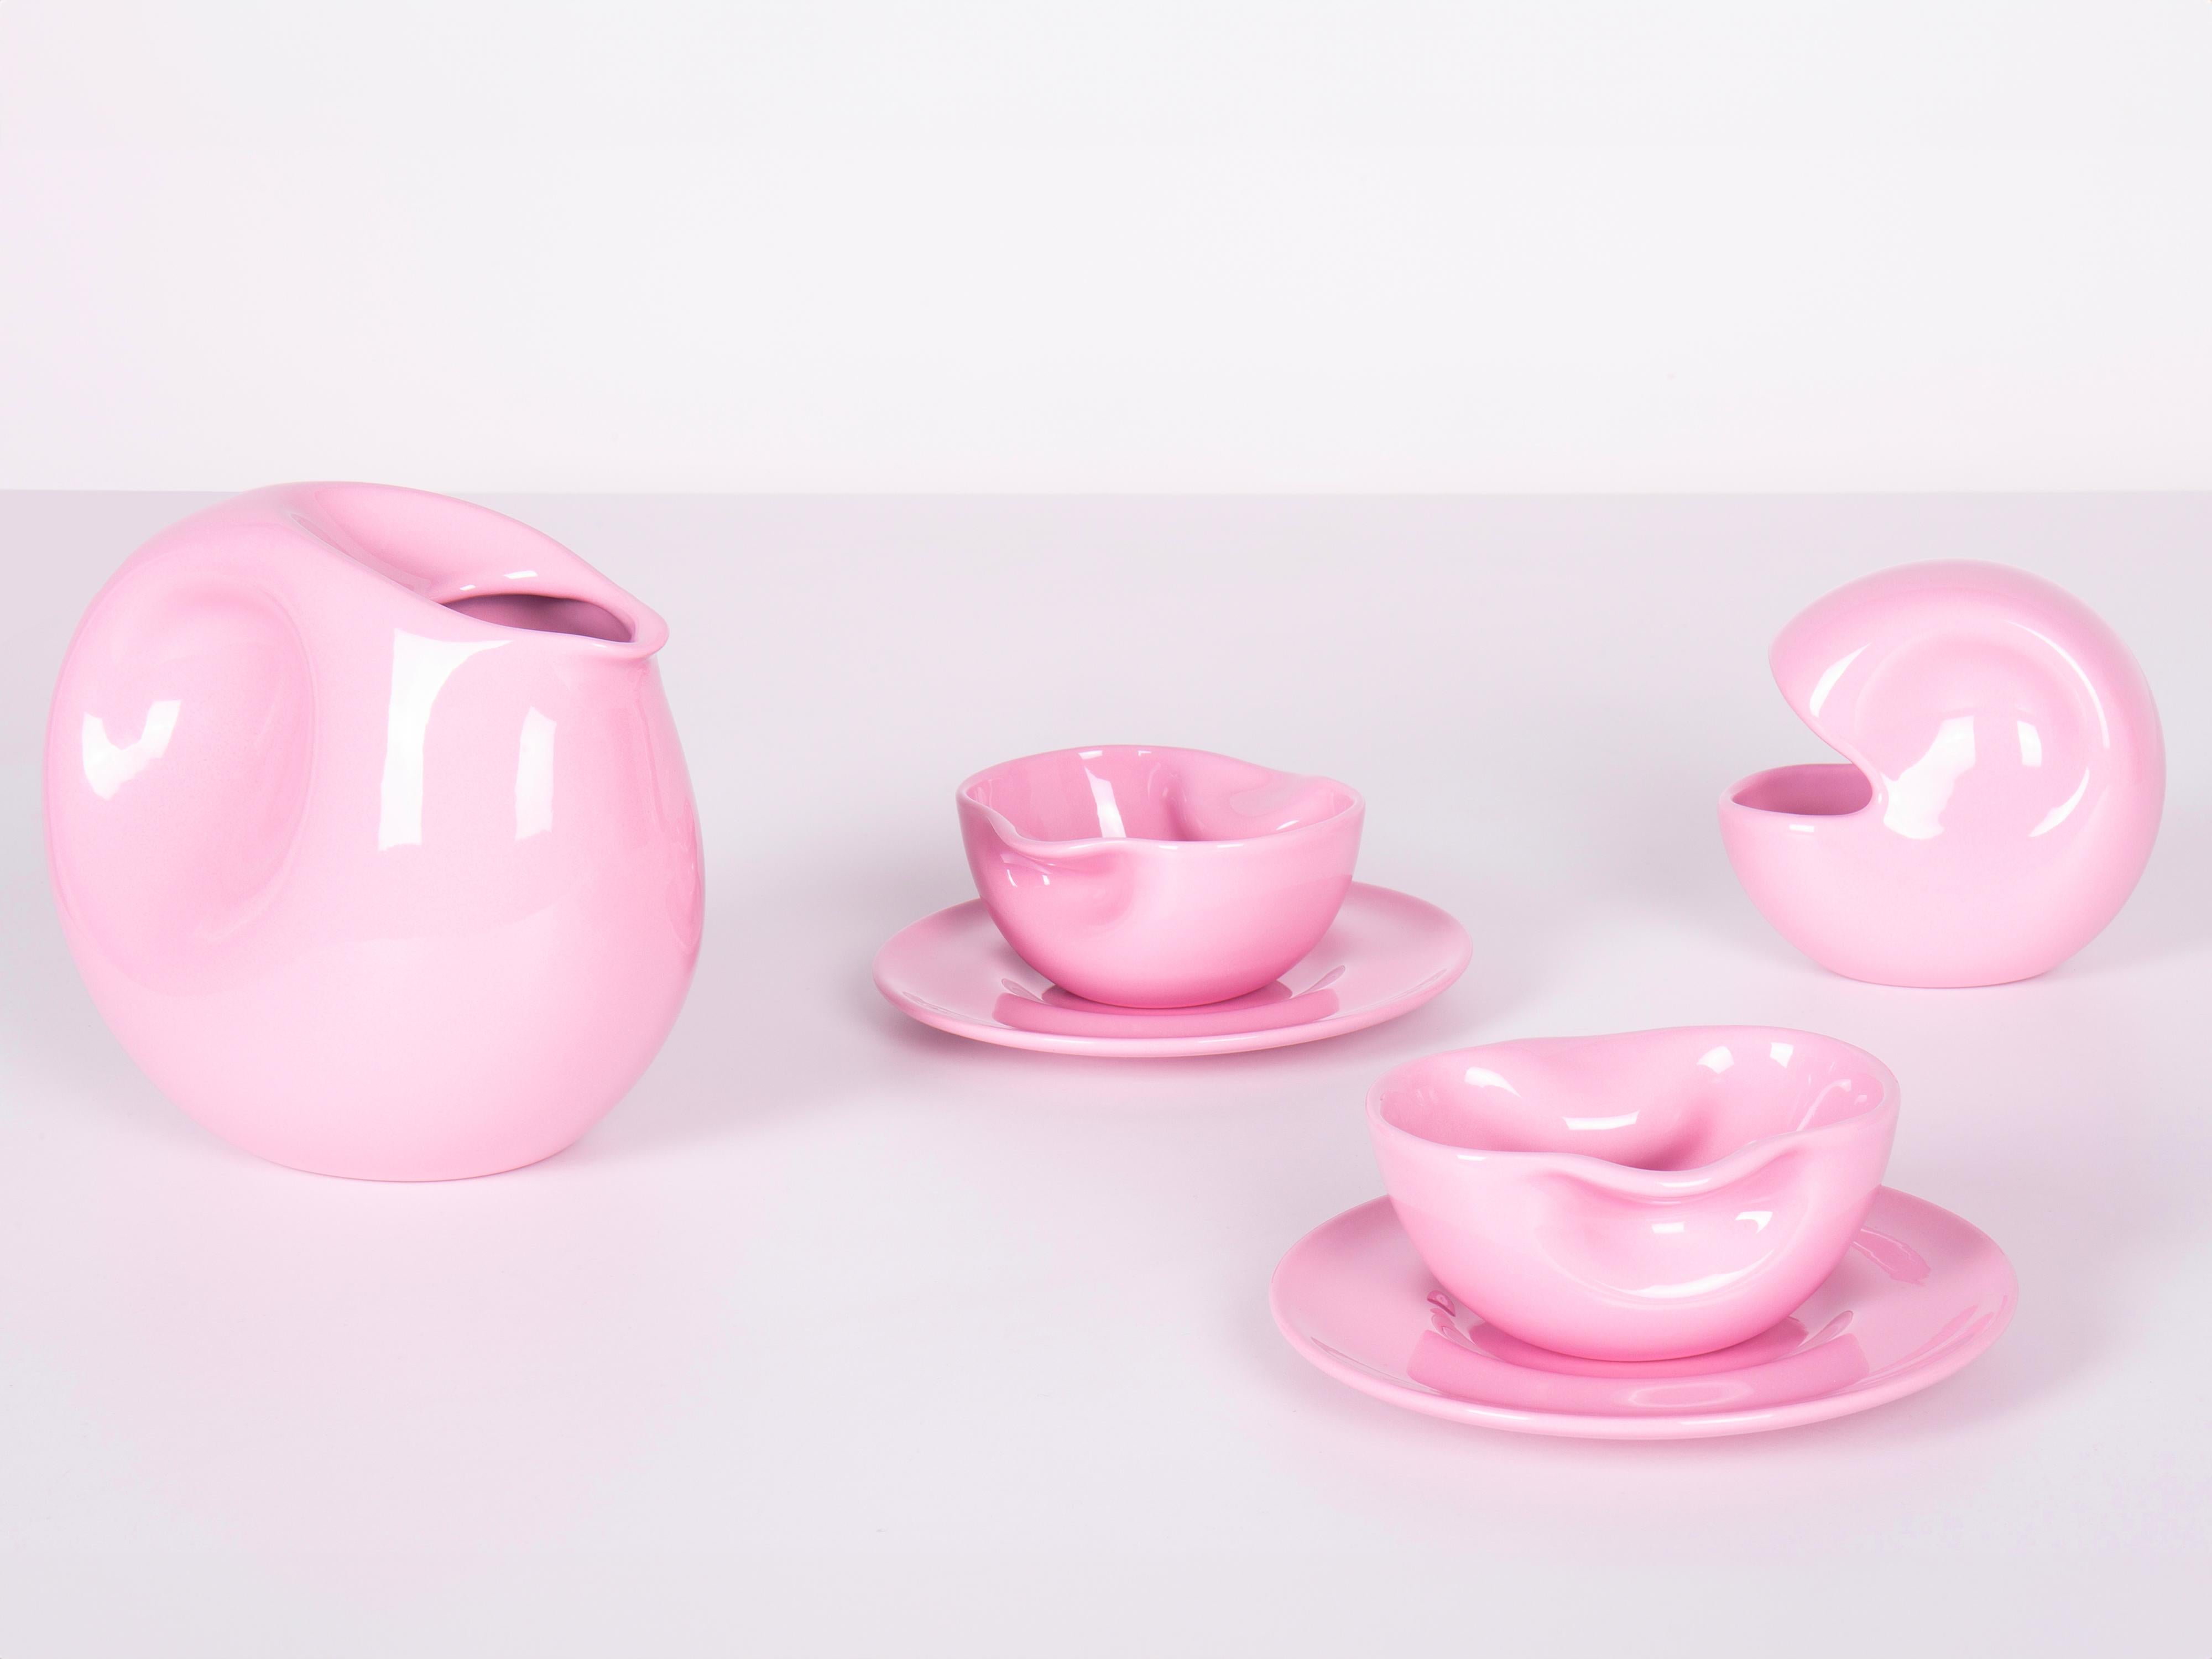 Entworfen 1975 - Paradisoterrestre Edition 2023

MATERIAL: emaillierte Tonwaren

Farben: rosa; auch in mintgrün oder weiß erhältlich.

Das vom italienischen Künstler Augusto Betti 1975 entworfene Teeservice besteht aus 1 Teekanne, 1 Zuckerdose, 2